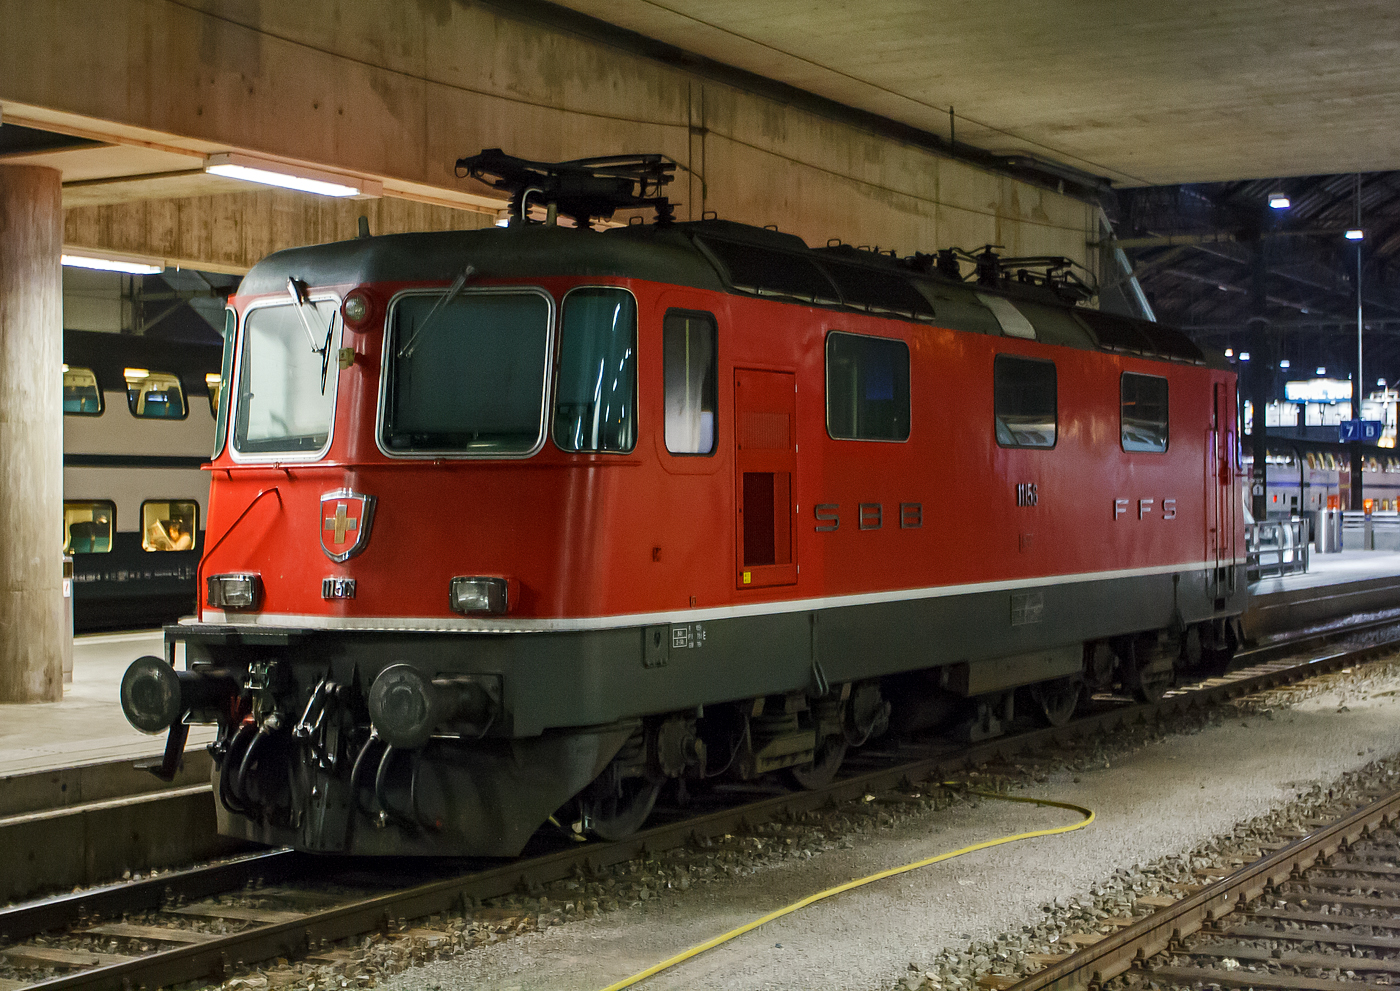 Bevor ich in hinten den IR 1951 nach Zürich umsteige muss ich erst noch eine meiner Lieblingsloks ablichten: Die SBB Re 4/4  - 11156 (Re 420 156) ist am 29.09.2012 (1:08 Uhr) im Bahnhof Basel SBB abgestell. Diese Lok ist die erste aus der 2. Bauserie. Diese Bo'Bo' Universallokomotiven haben eine Leistung von 4700 kW (6320 PS) und eine Höchstgeschwindigkeit von 140 km/h, in der Schweiz ist nicht Höchstgeschwindigkeit  sondern Leistung das entscheidende.